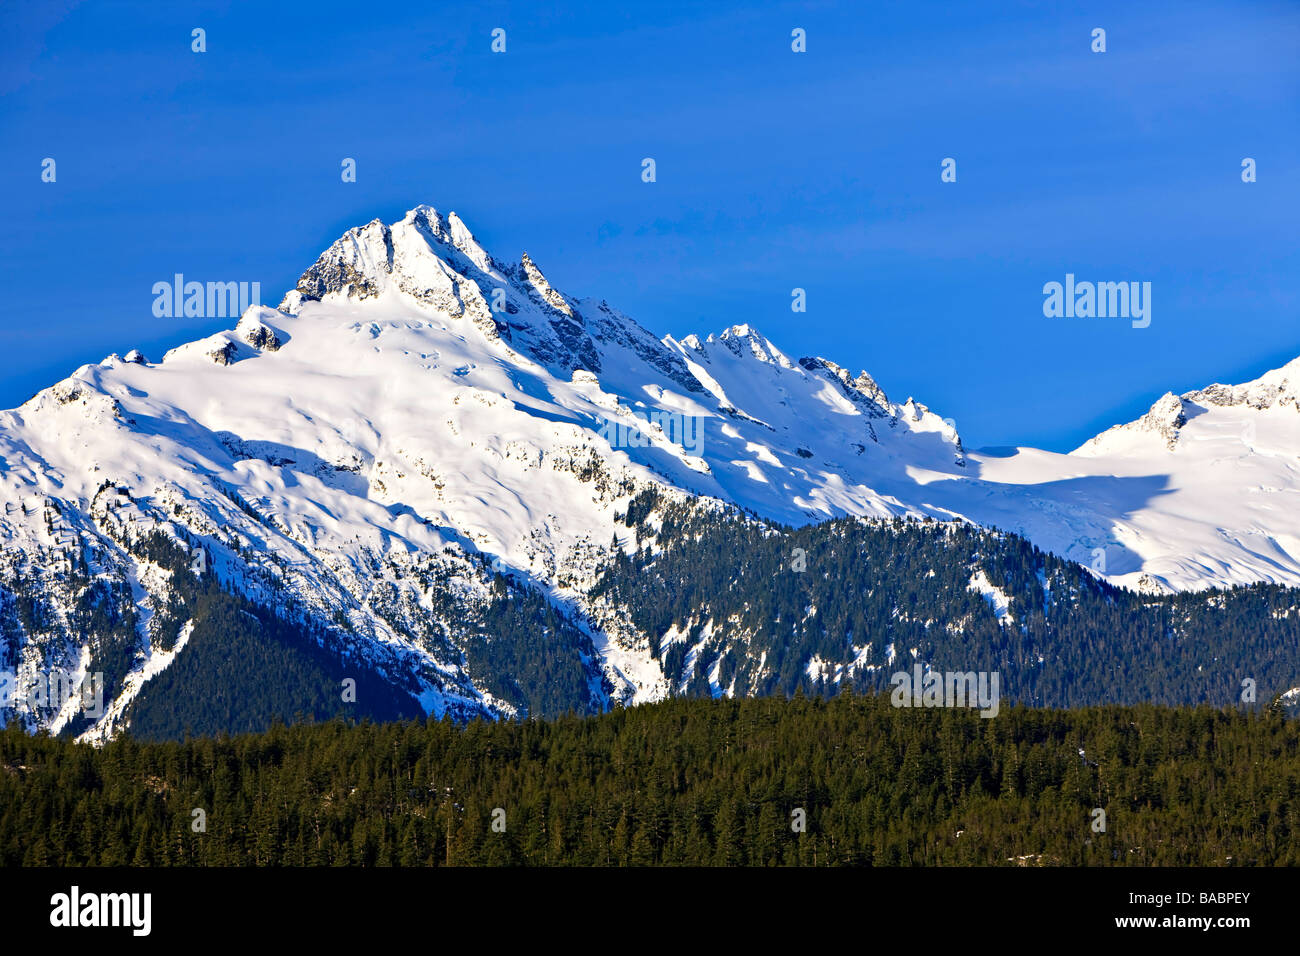 Mount Tantalus 2603 metres 8540 feet Tantalus Mountain Range Coast Mountains British Columbia Canada Stock Photo